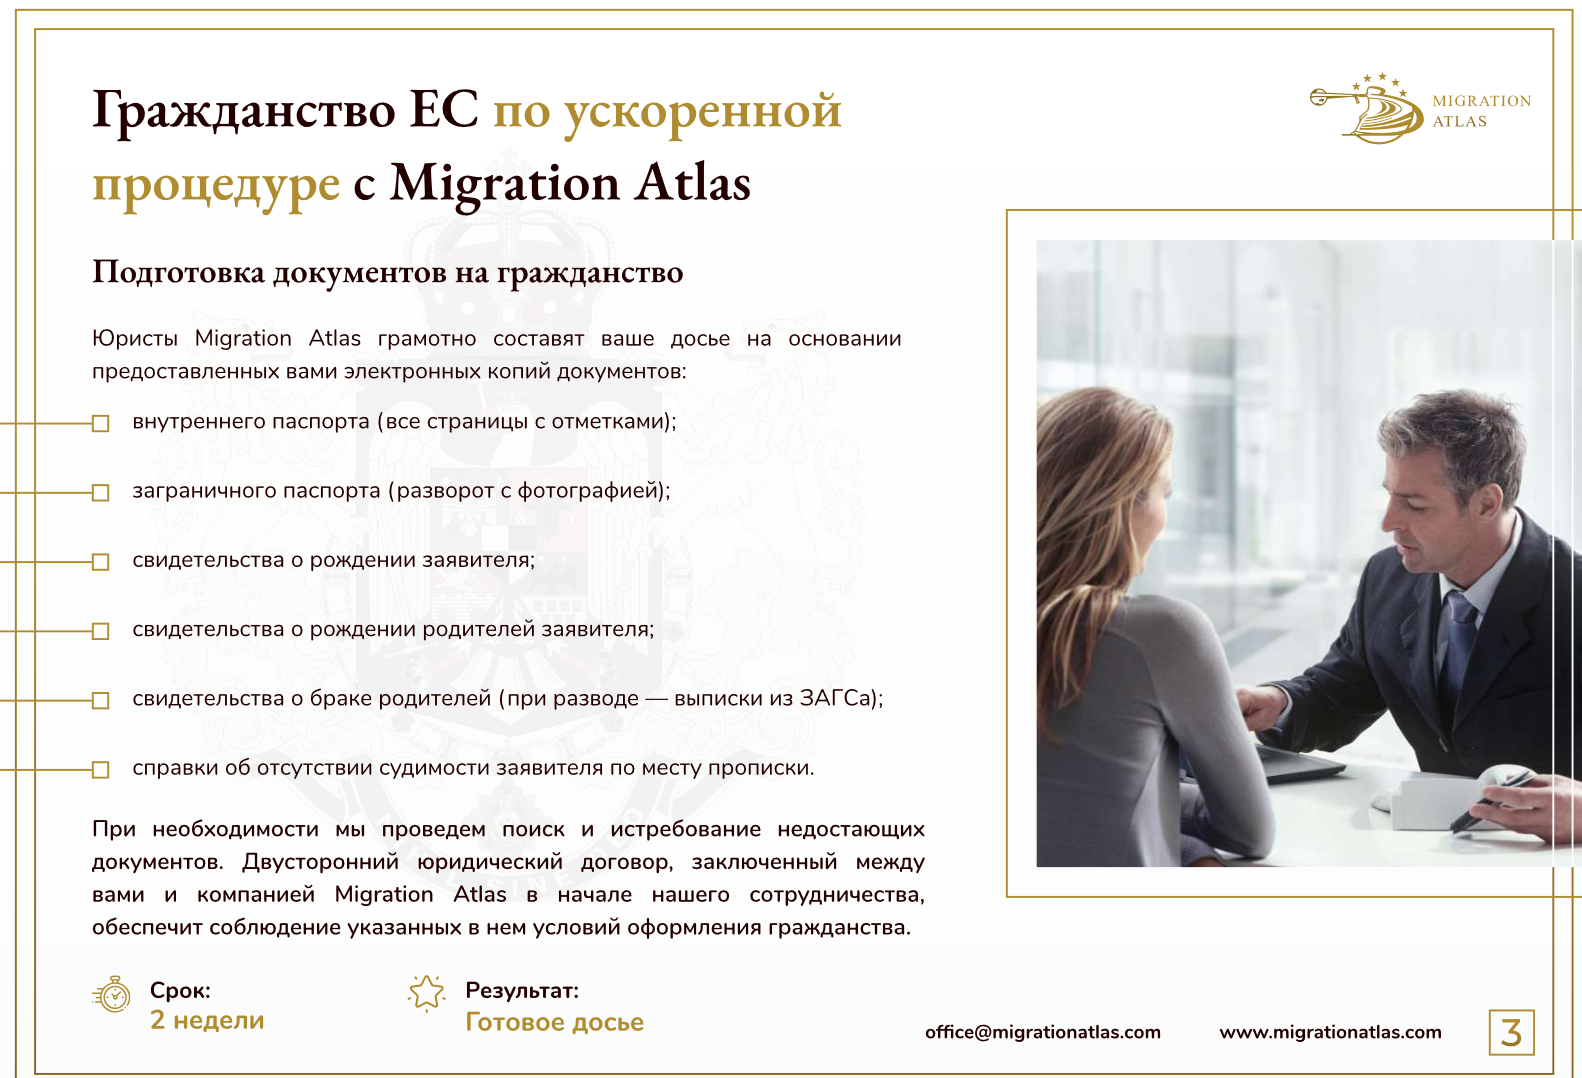 Страница из презентации Migration Atlas. Полная презентация есть в распоряжении редакции